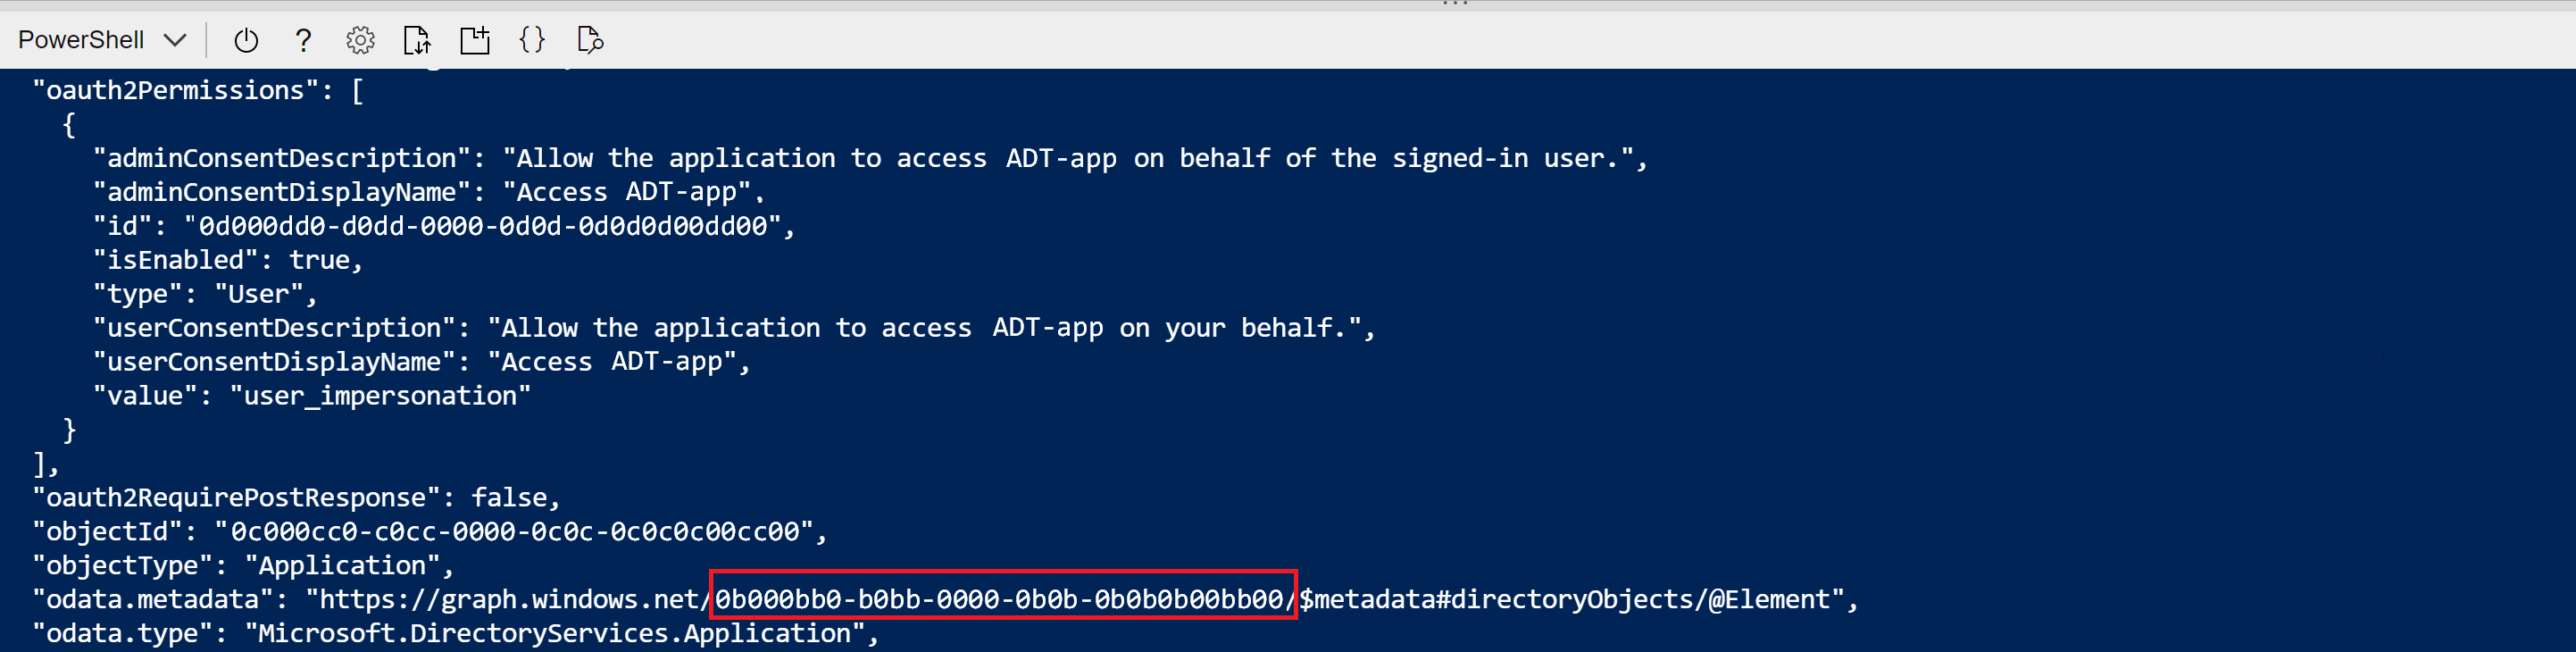 Снимок экрана Cloud Shell с командой создания регистрации приложения. Выделено значение GUID в odata.metadata.